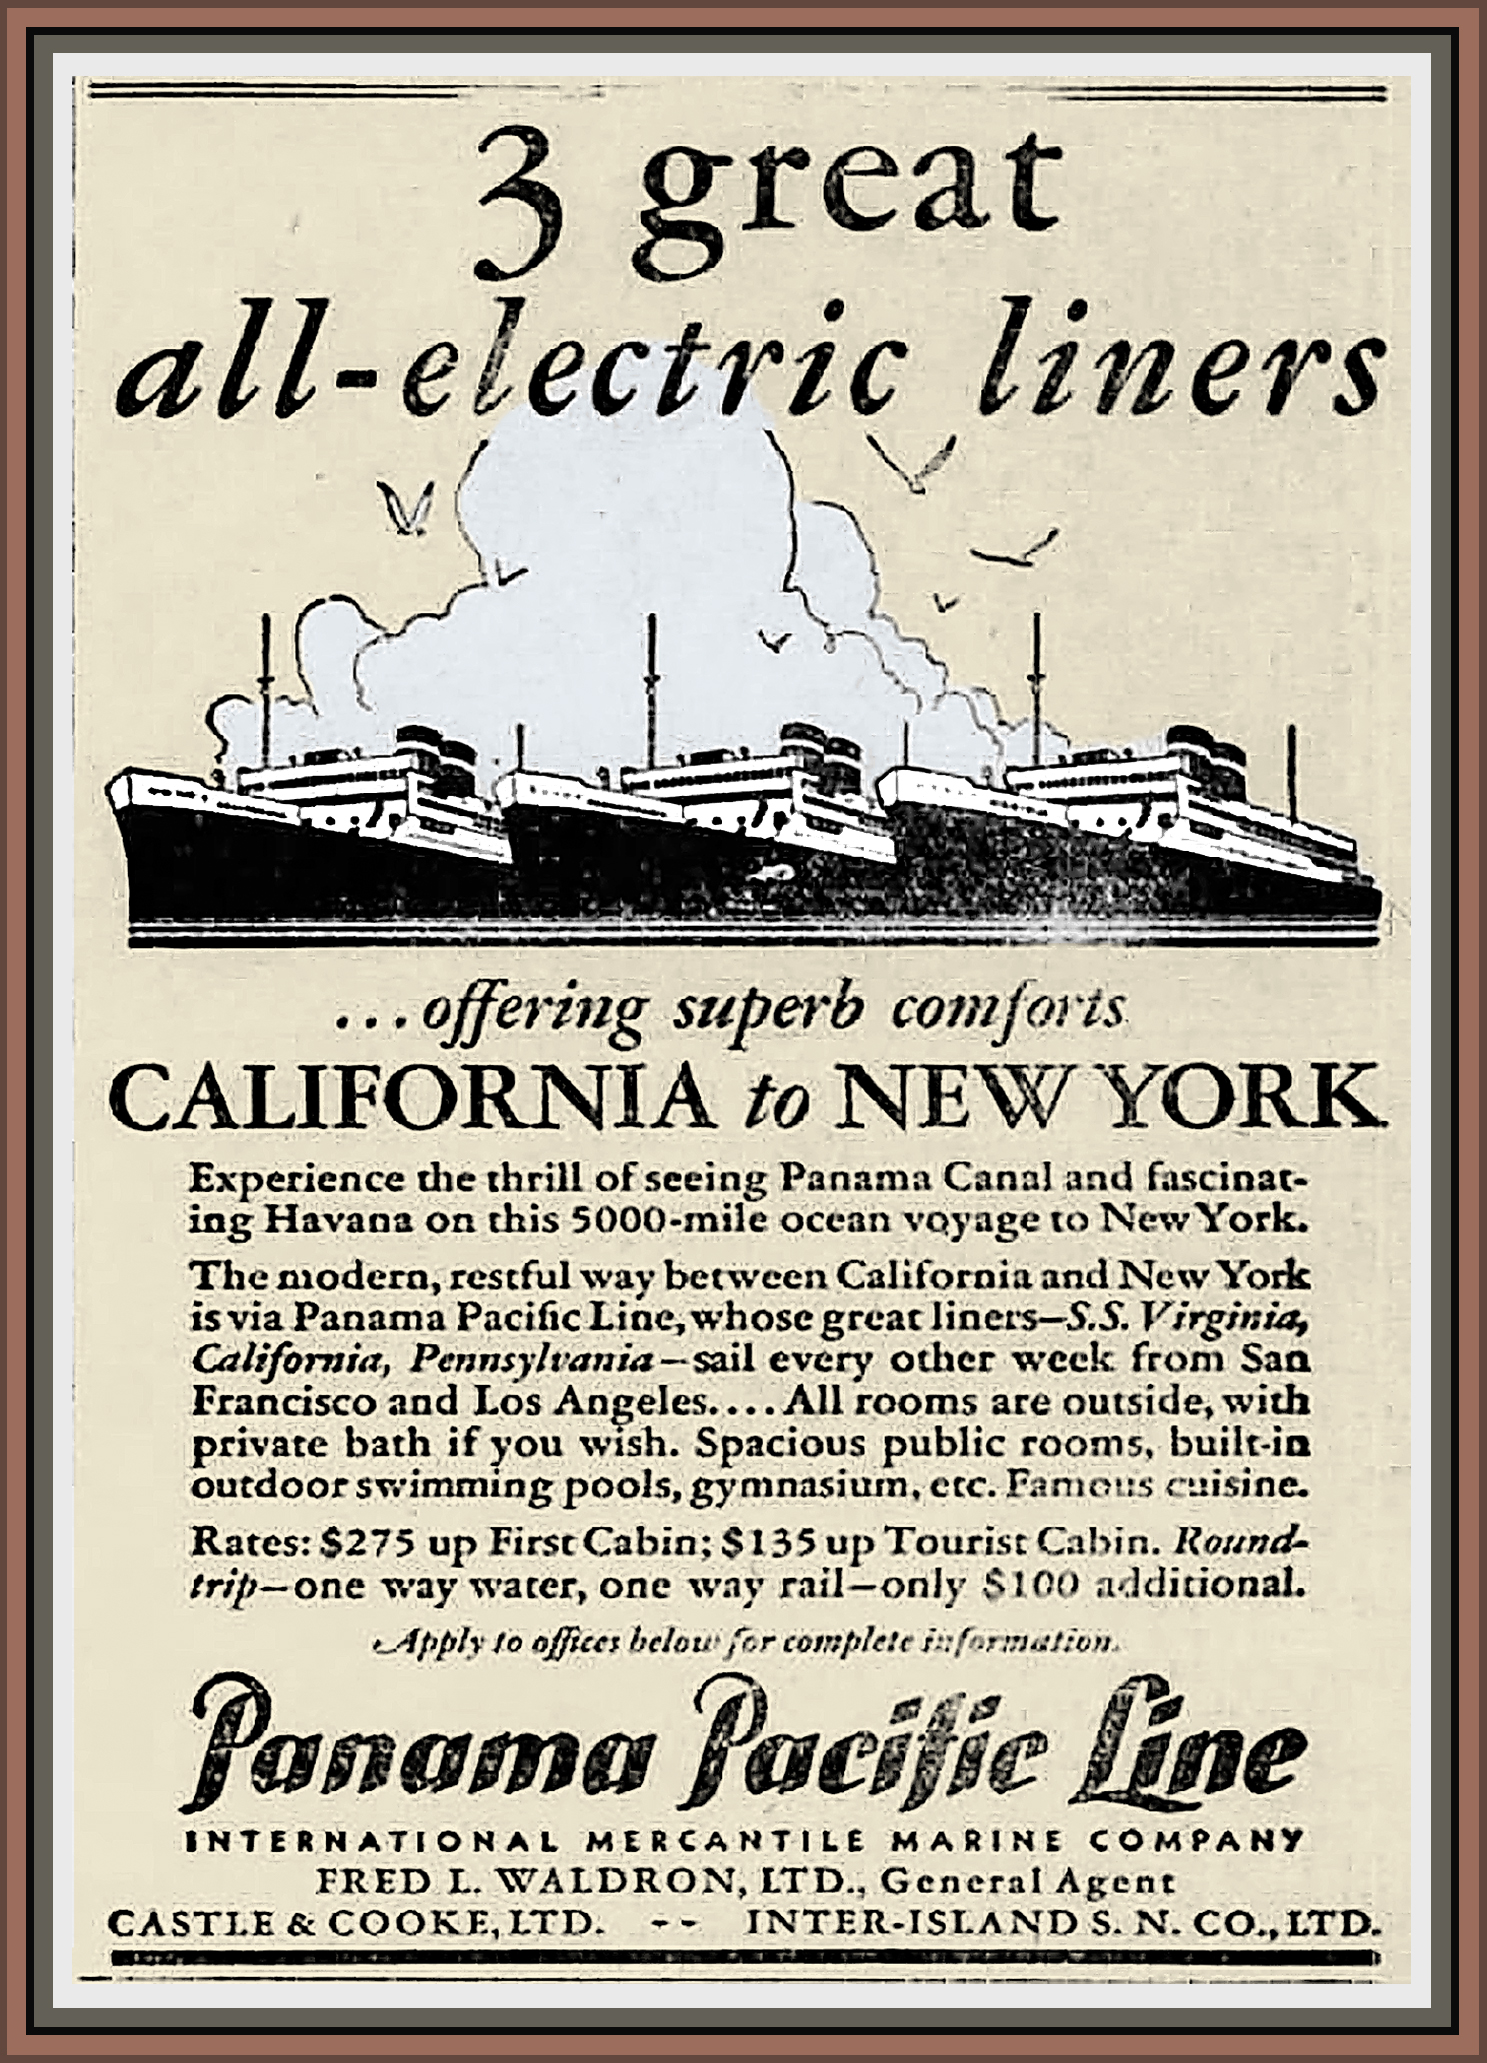 'All-electric liner' was een reclame-slogan om passagiers te lokken. De elektriciteit werd wel degelijk met stoom opgewekt, weliswaar met een turbine en geen ouderwetse stoommachine.